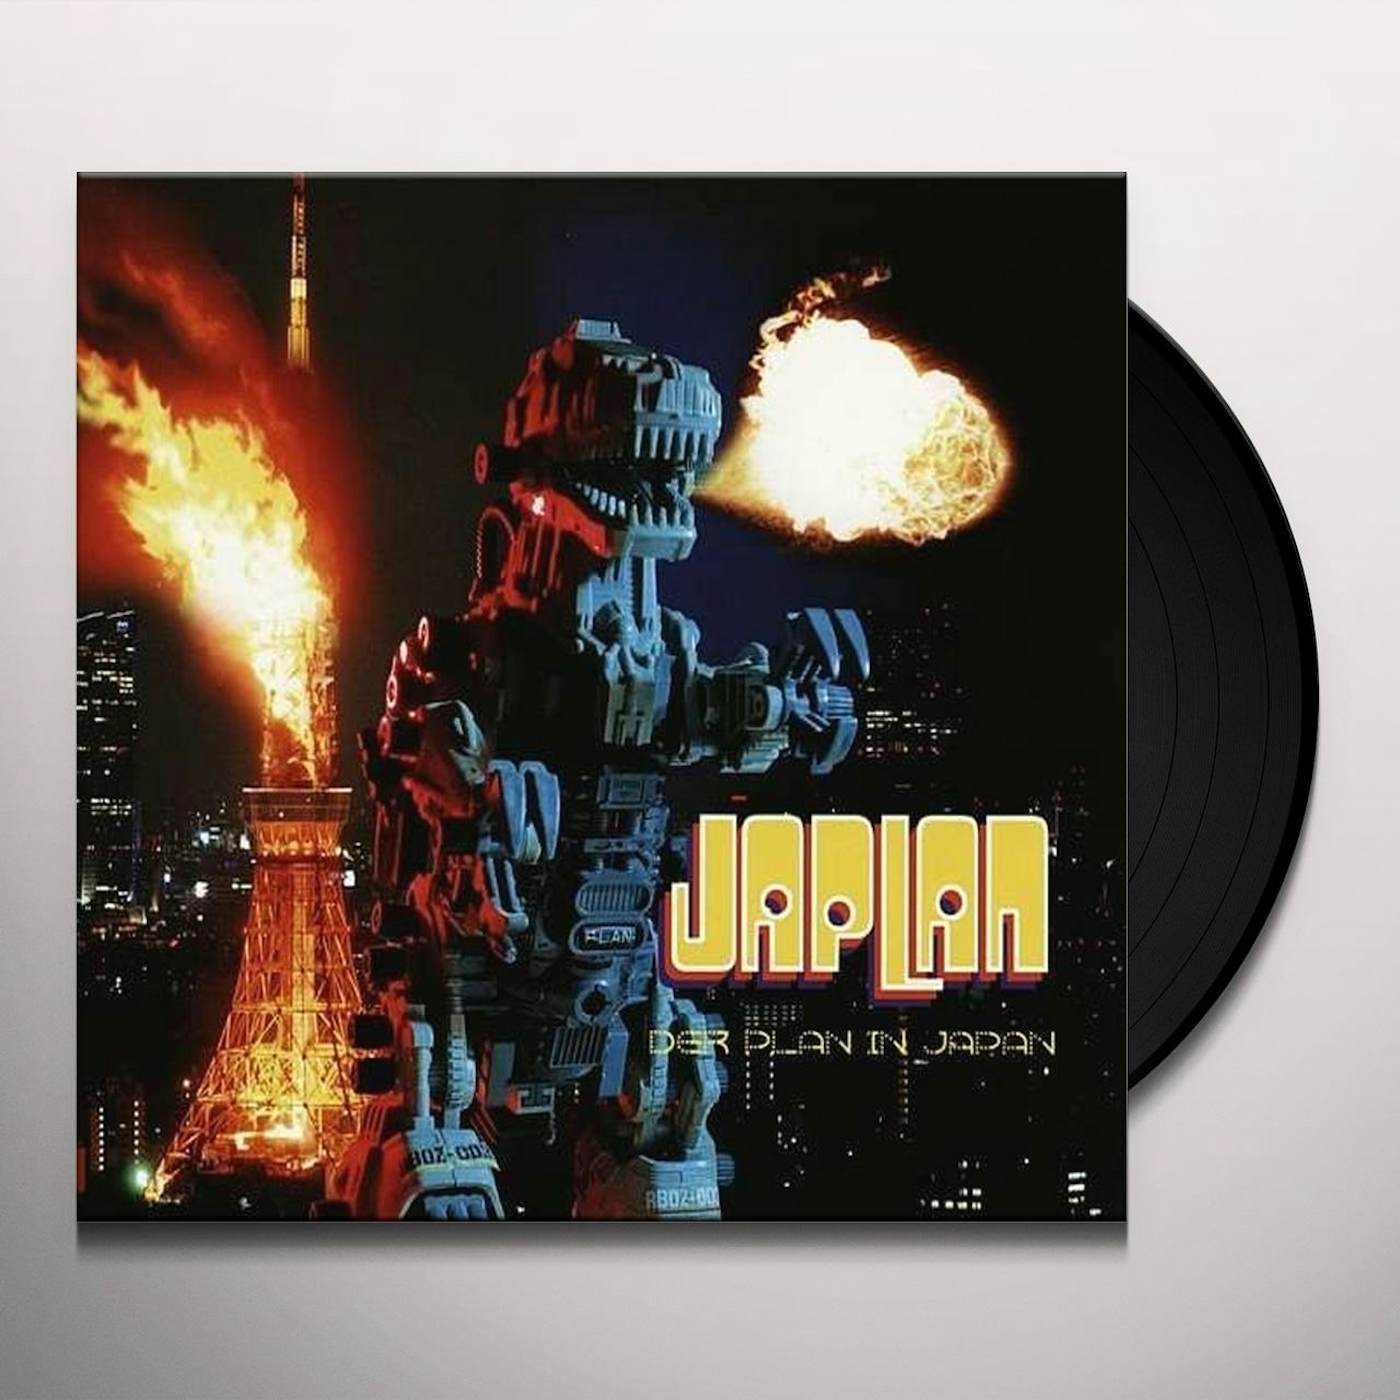 Der Plan Japlan Vinyl Record